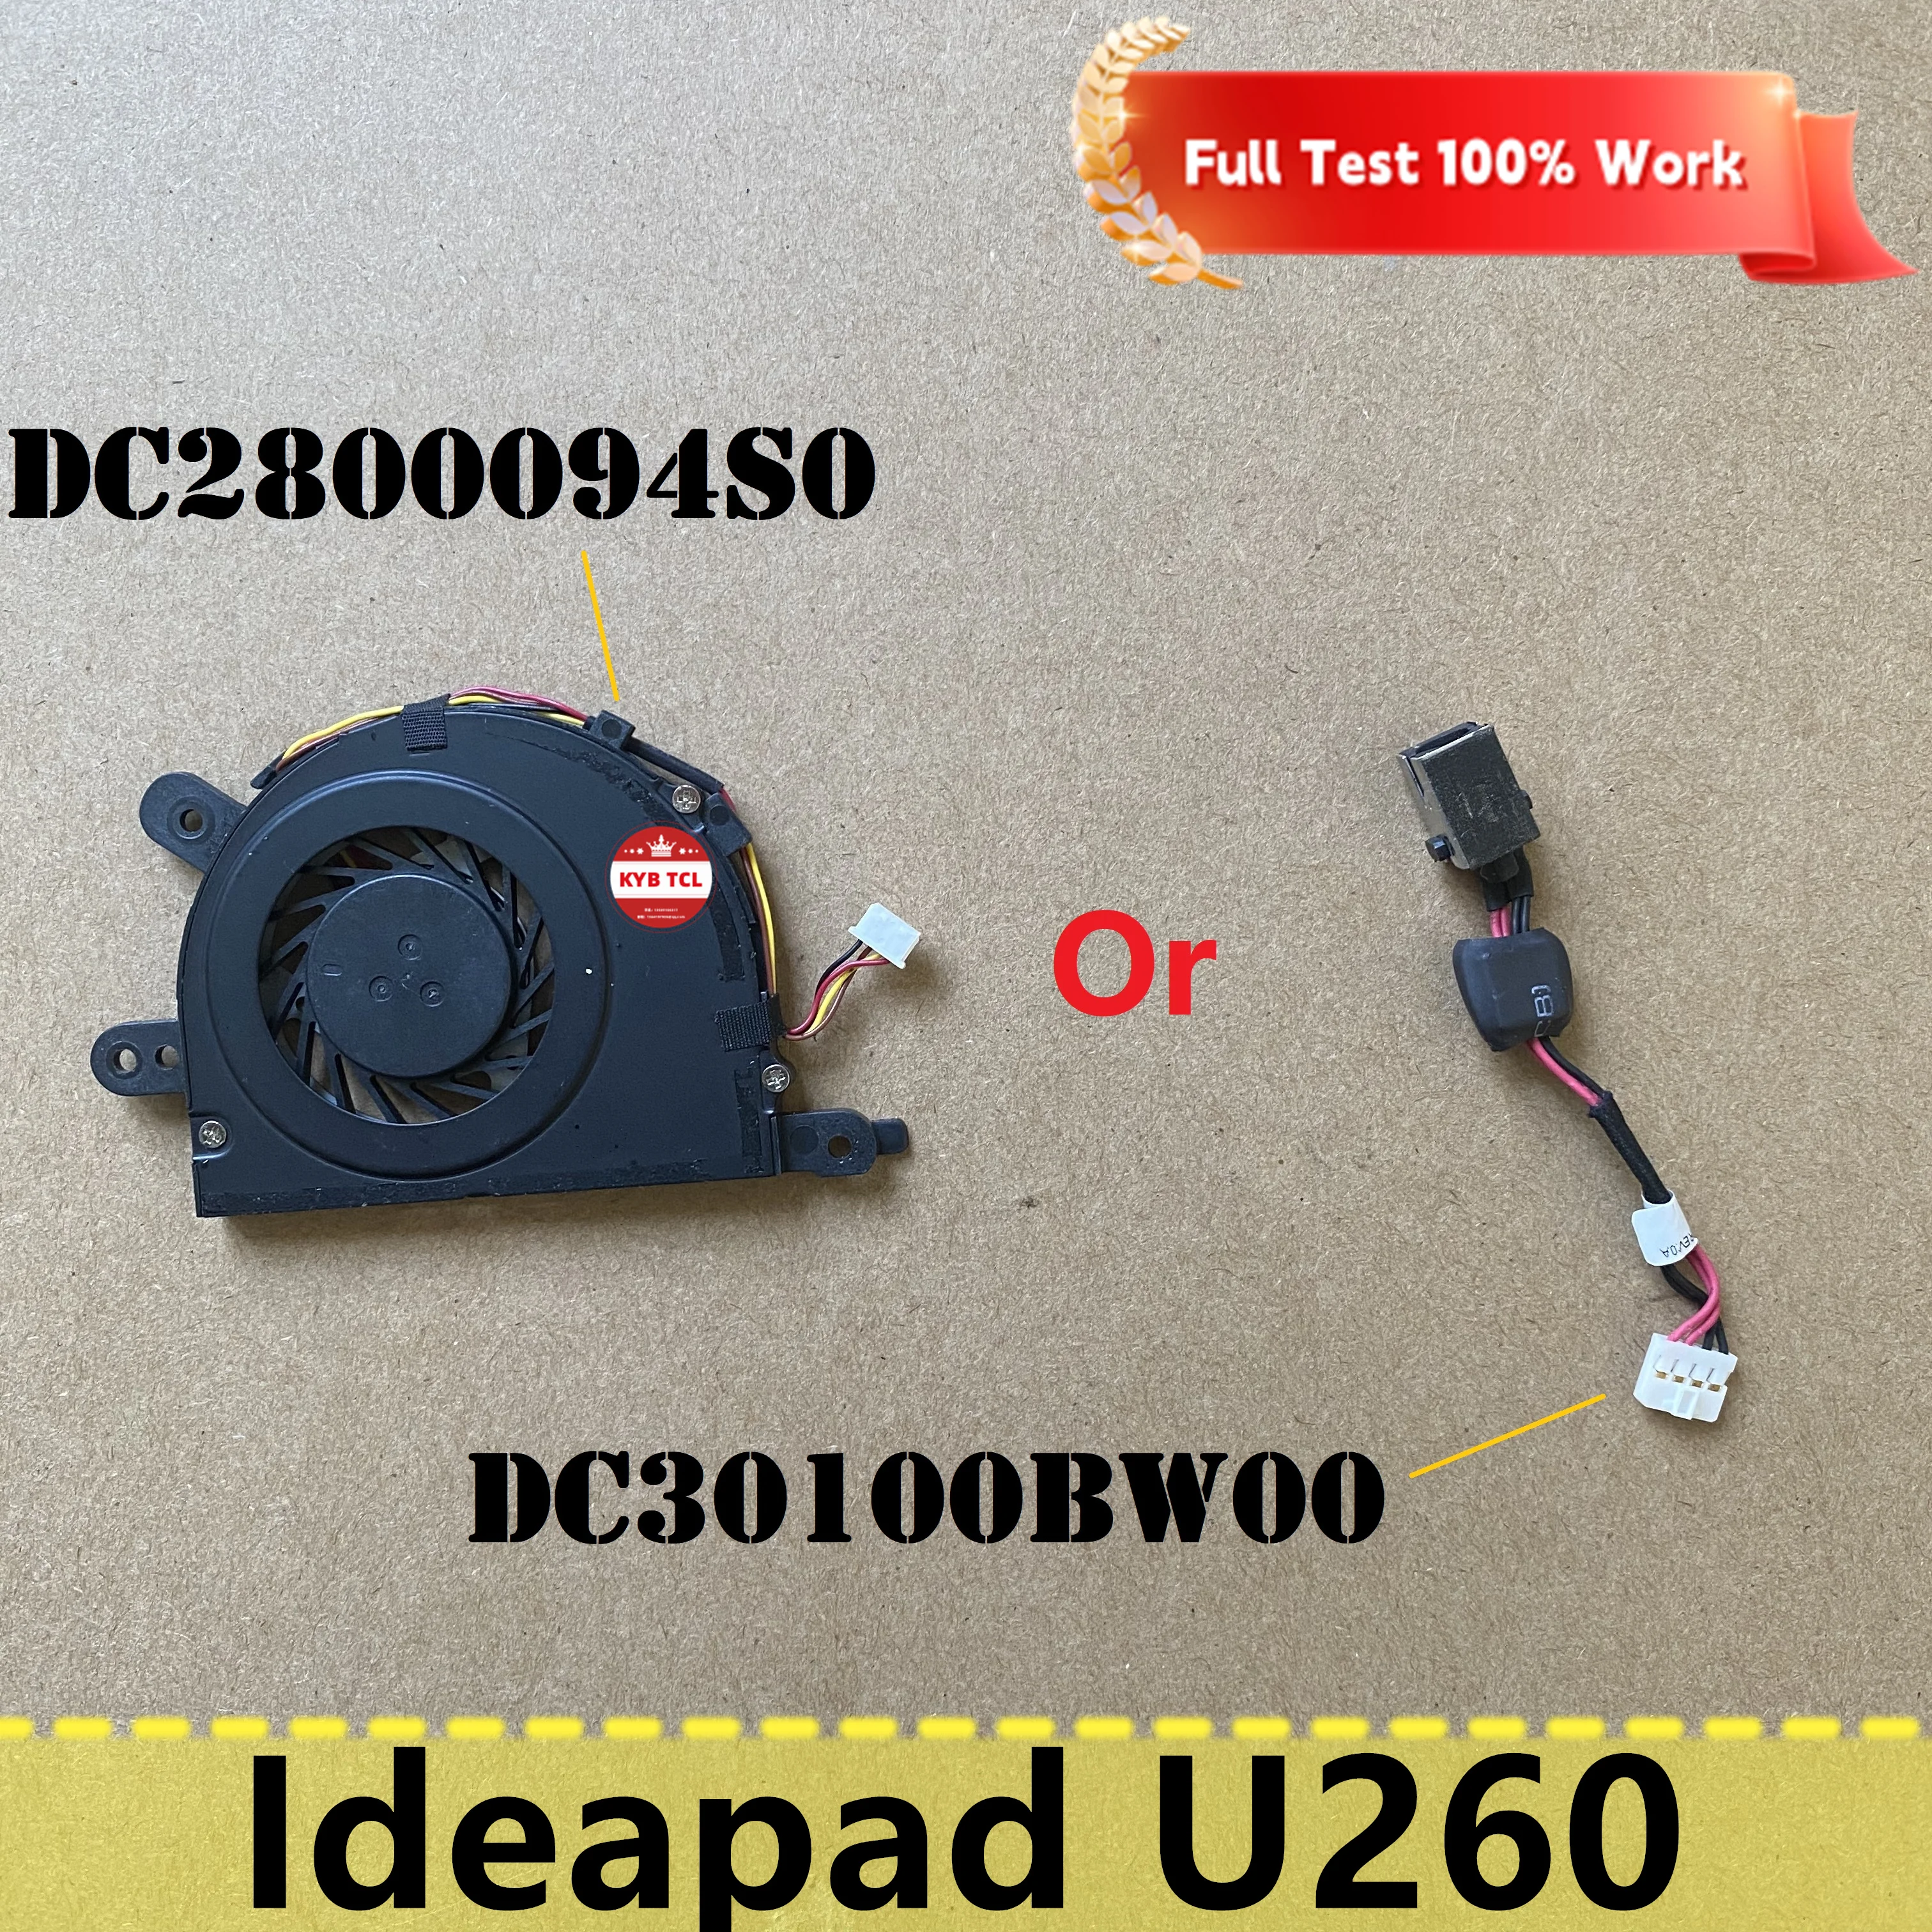 

Разъем питания постоянного тока для ноутбука Lenovo Ideapad U260 с кабелем или кулером охлаждения ЦП DC2800094S0 DC30100BW00